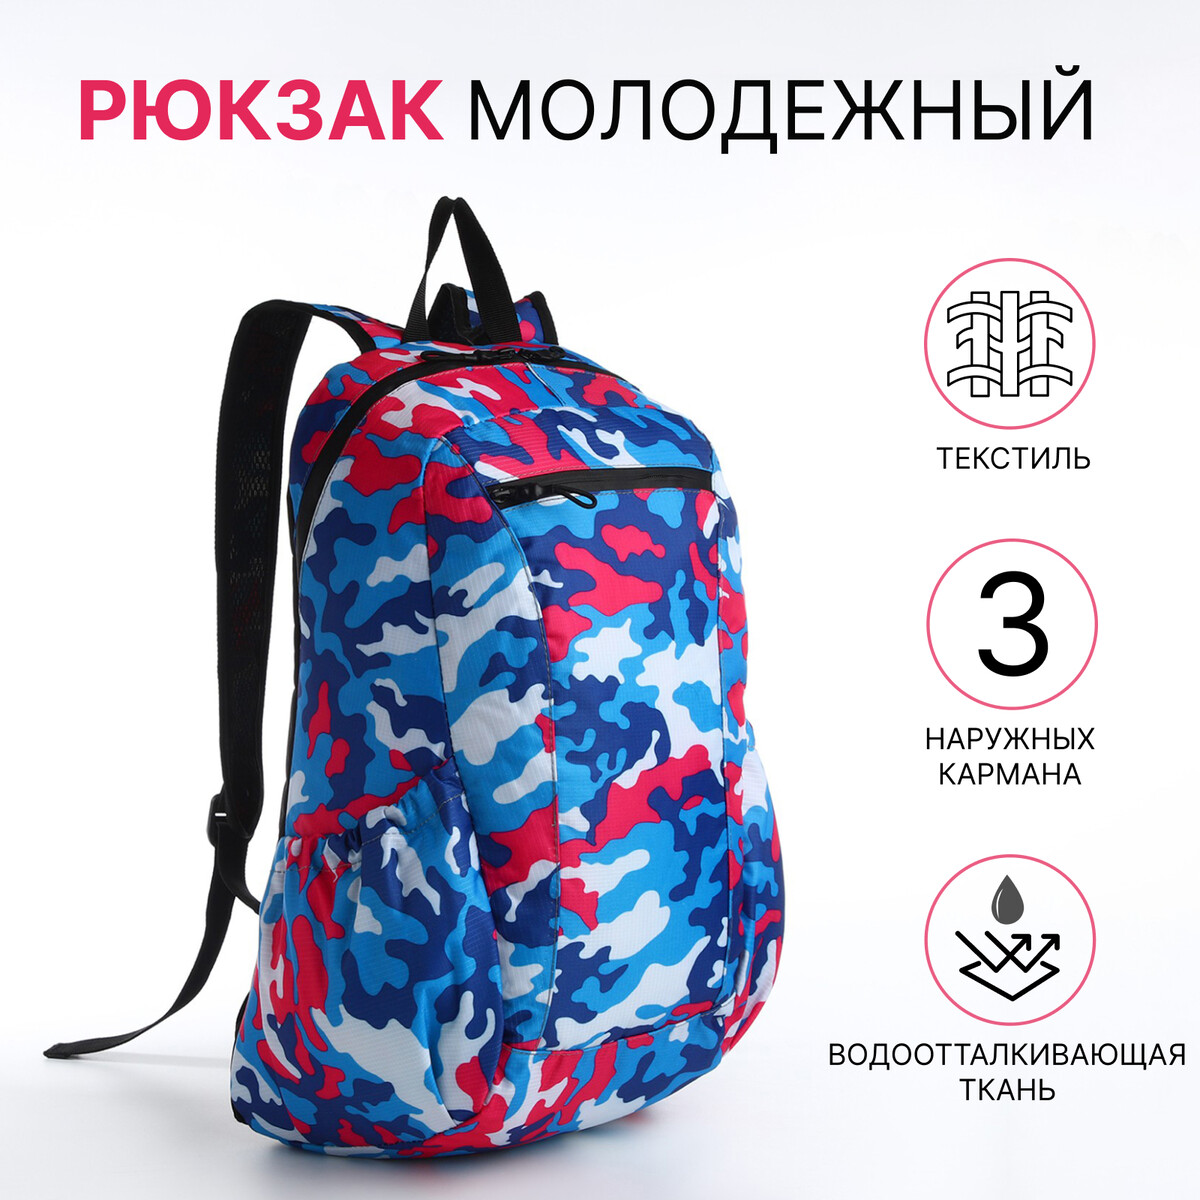 Рюкзак молодежный, водонепроницаемый на молнии, 3 кармана, цвет голубой/розовый рюкзак молодежный из текстиля 4 кармана розовый